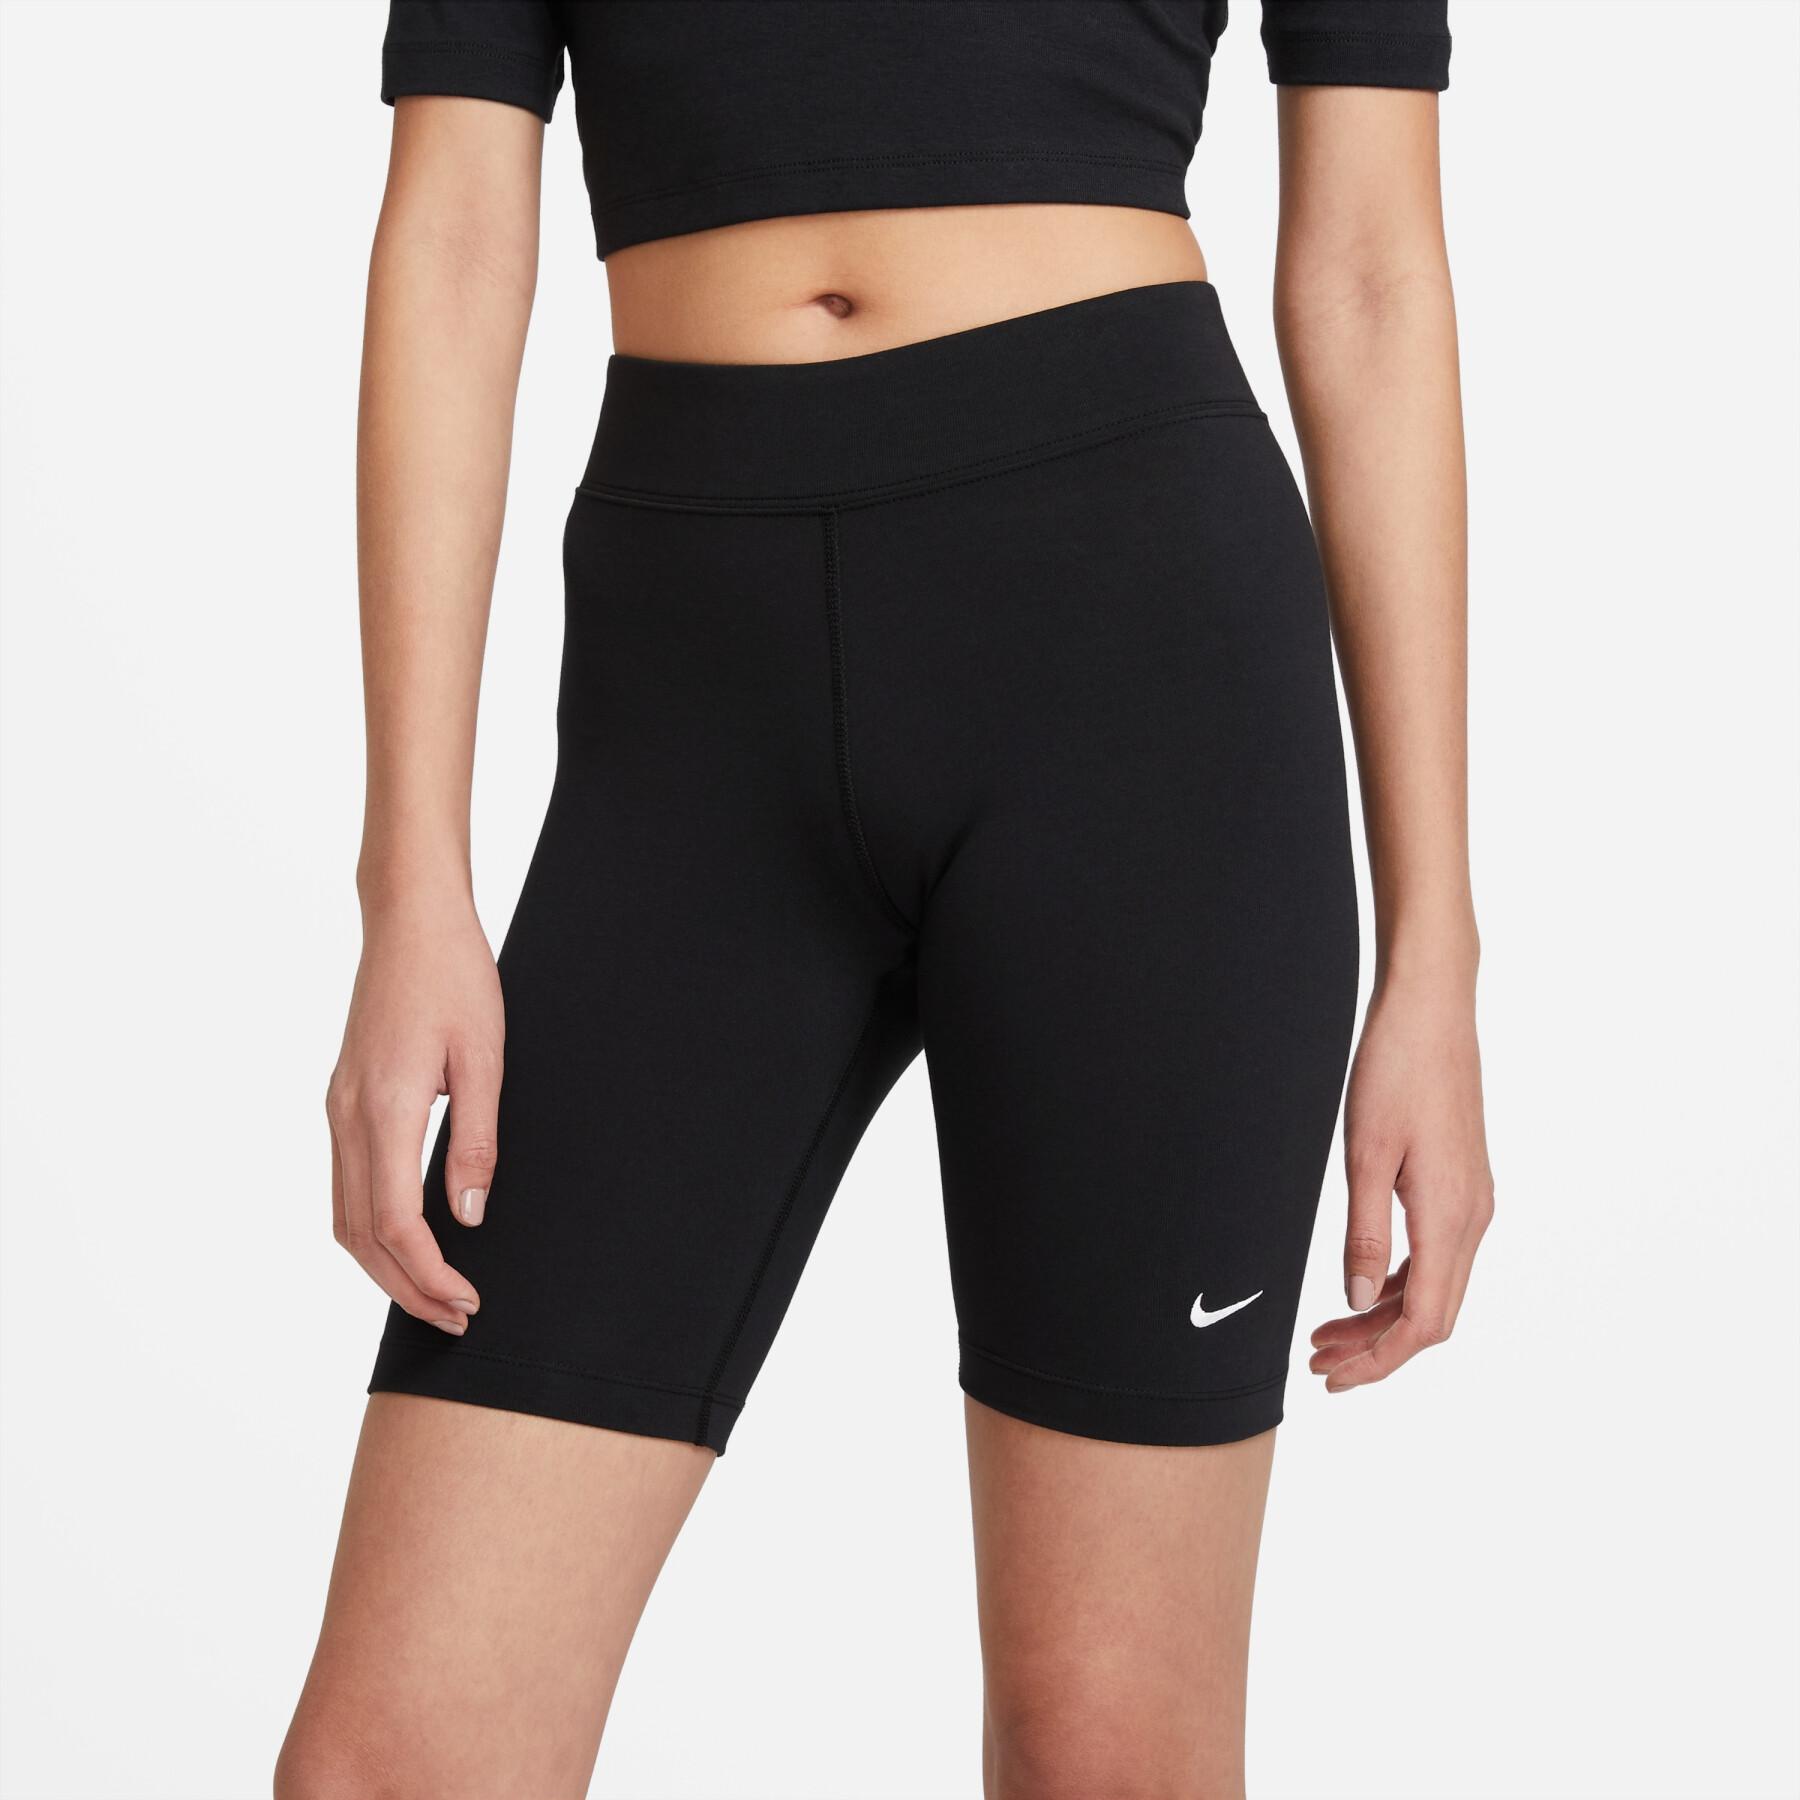 Women's shorts Nike sportswear essential